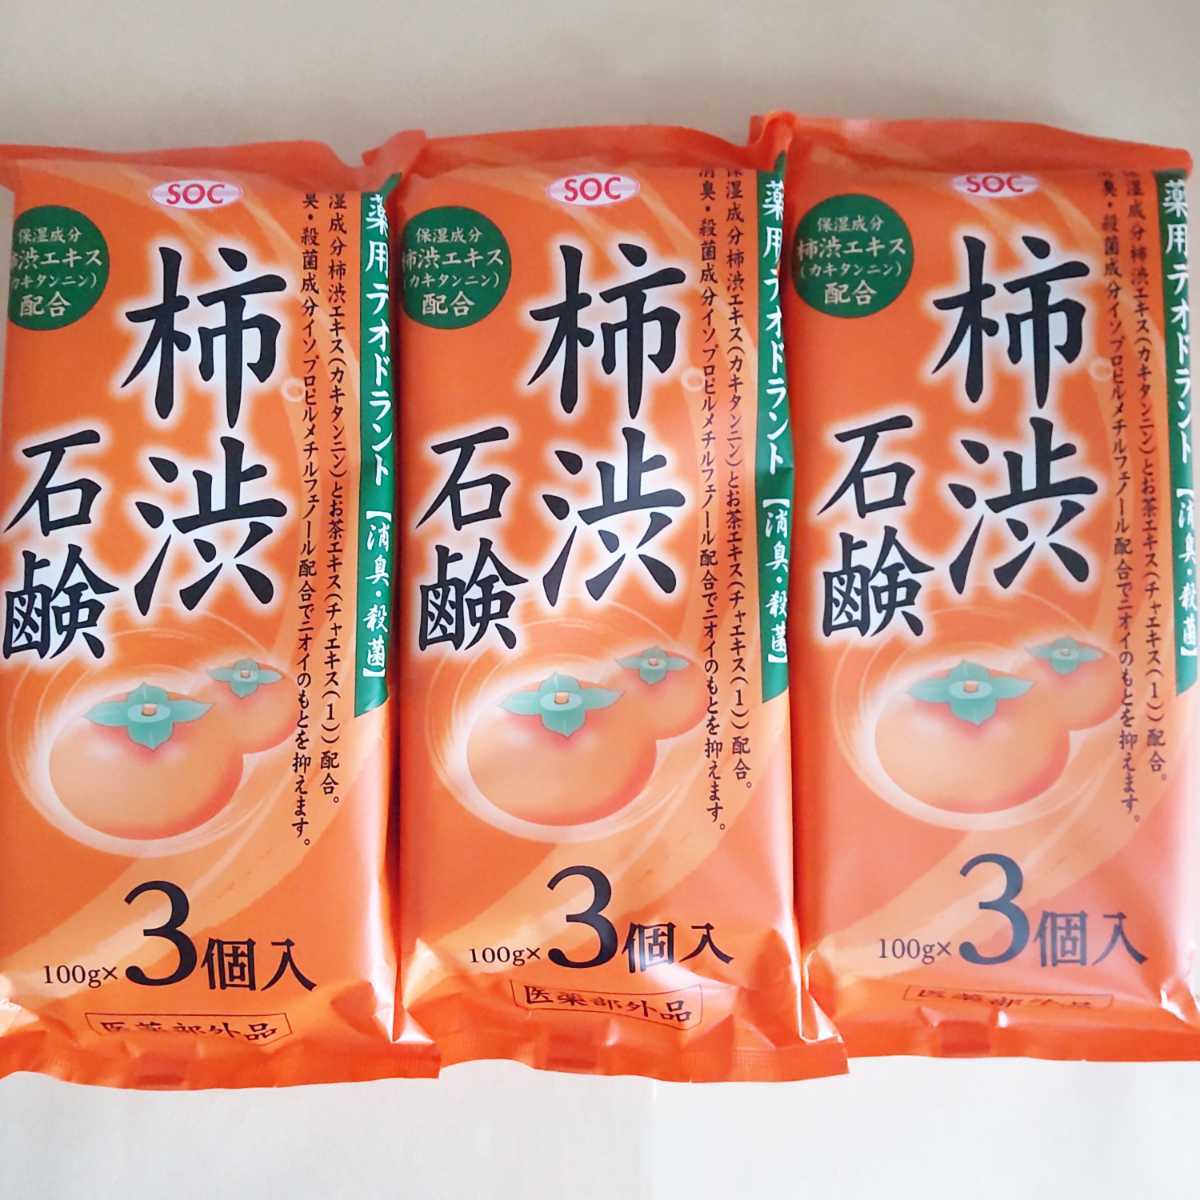 柿渋石鹸 3個 薬用 柿渋石けん 最大59%OFFクーポン